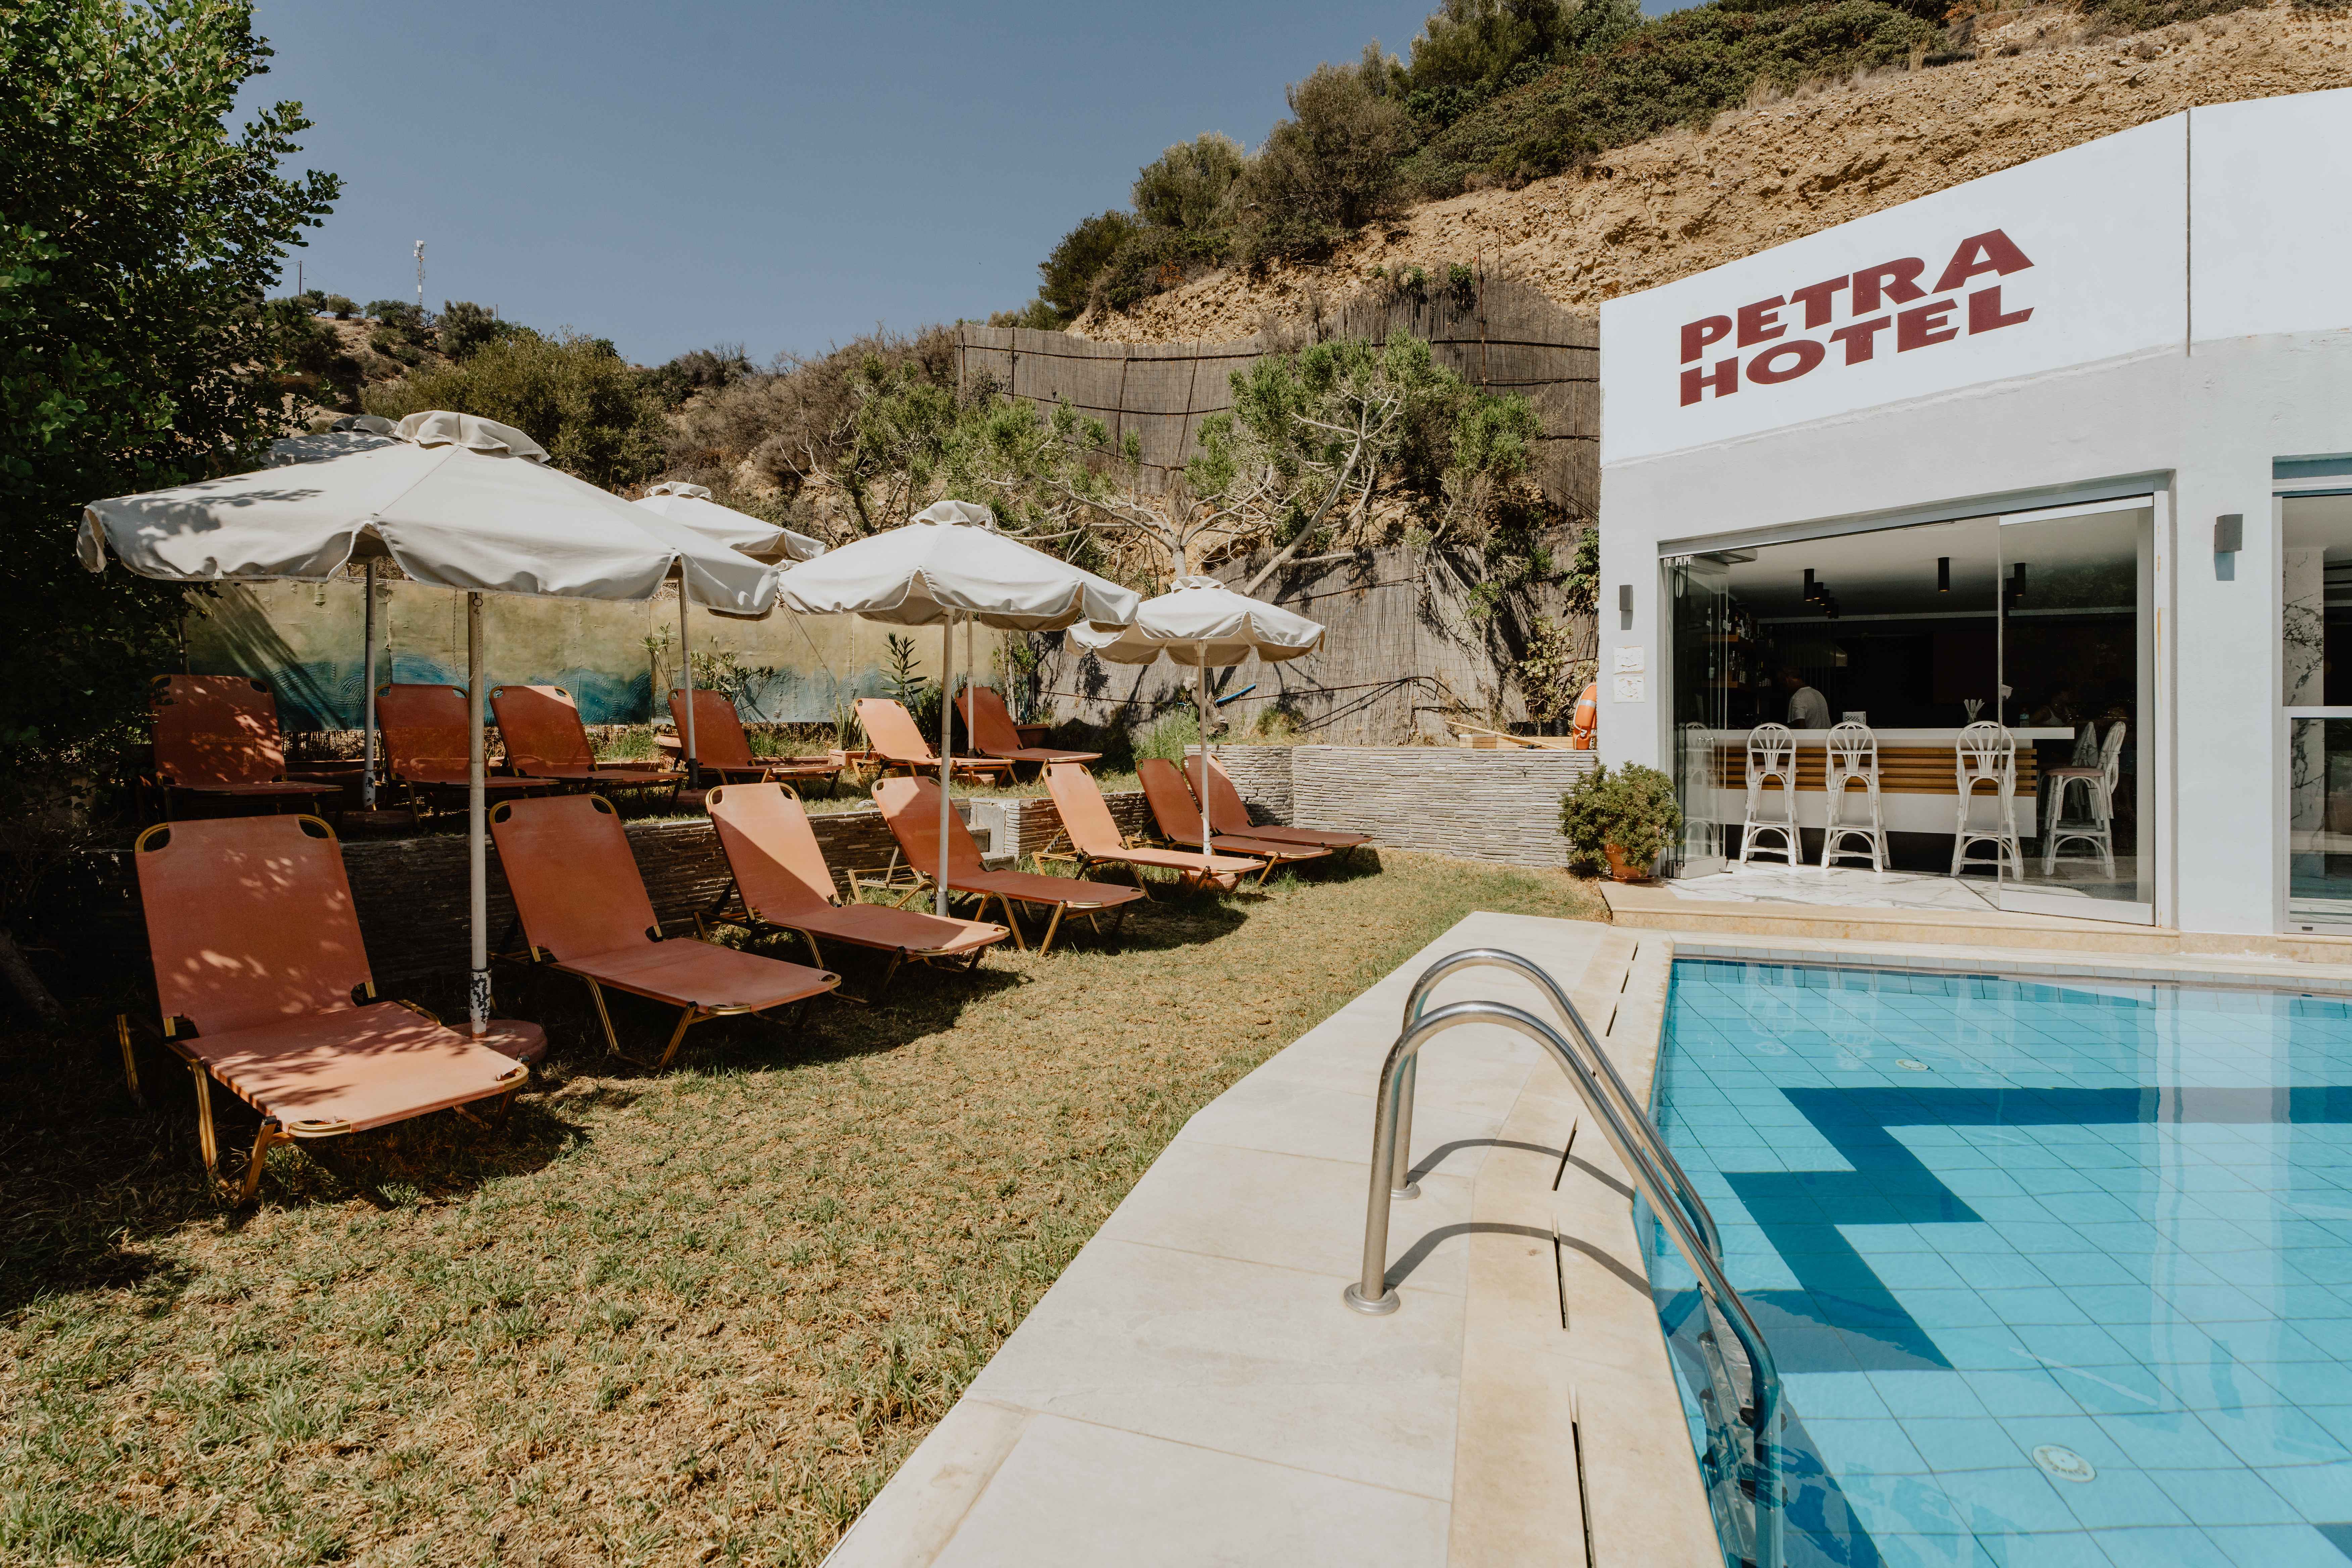 Petra Hotel (Crete)